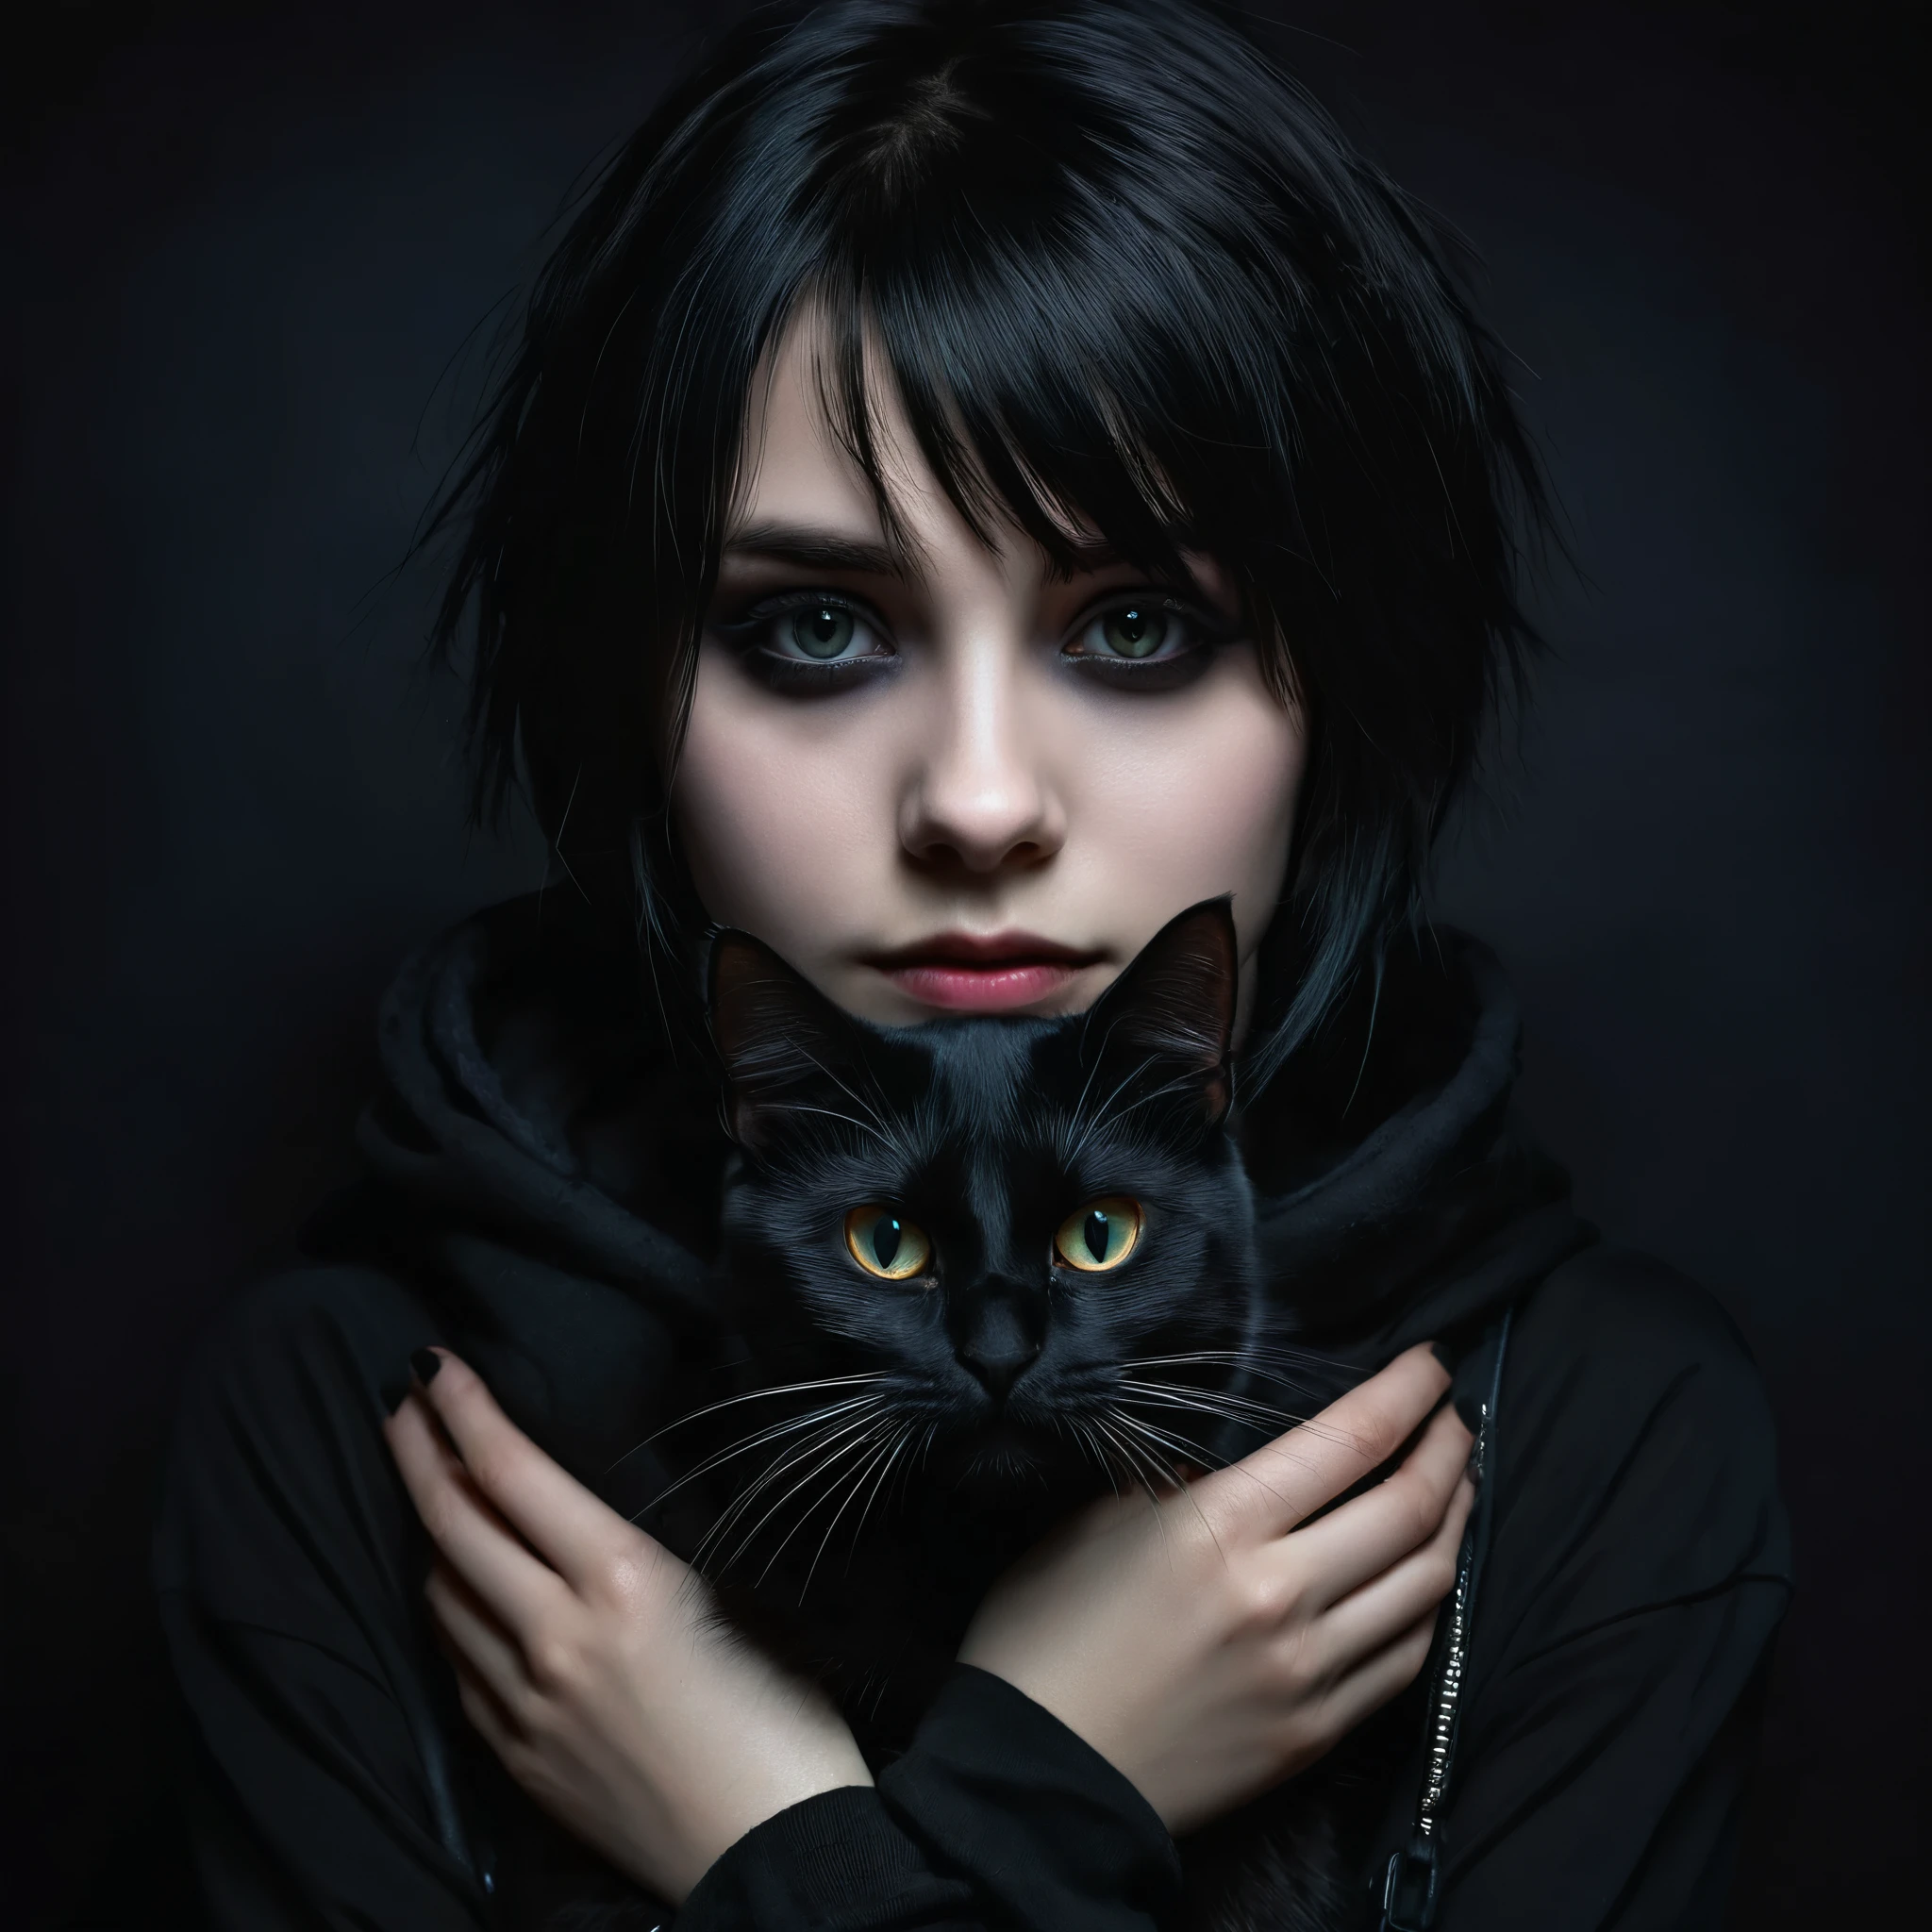 Эмо-девушка с черной кошкой на руках, детальное лицо, темный макияж, Эмоциональное выражение, черная одежда, Темный фон, освещение светотеней, Кинематографический, Драматический, капризный, цифровая живопись